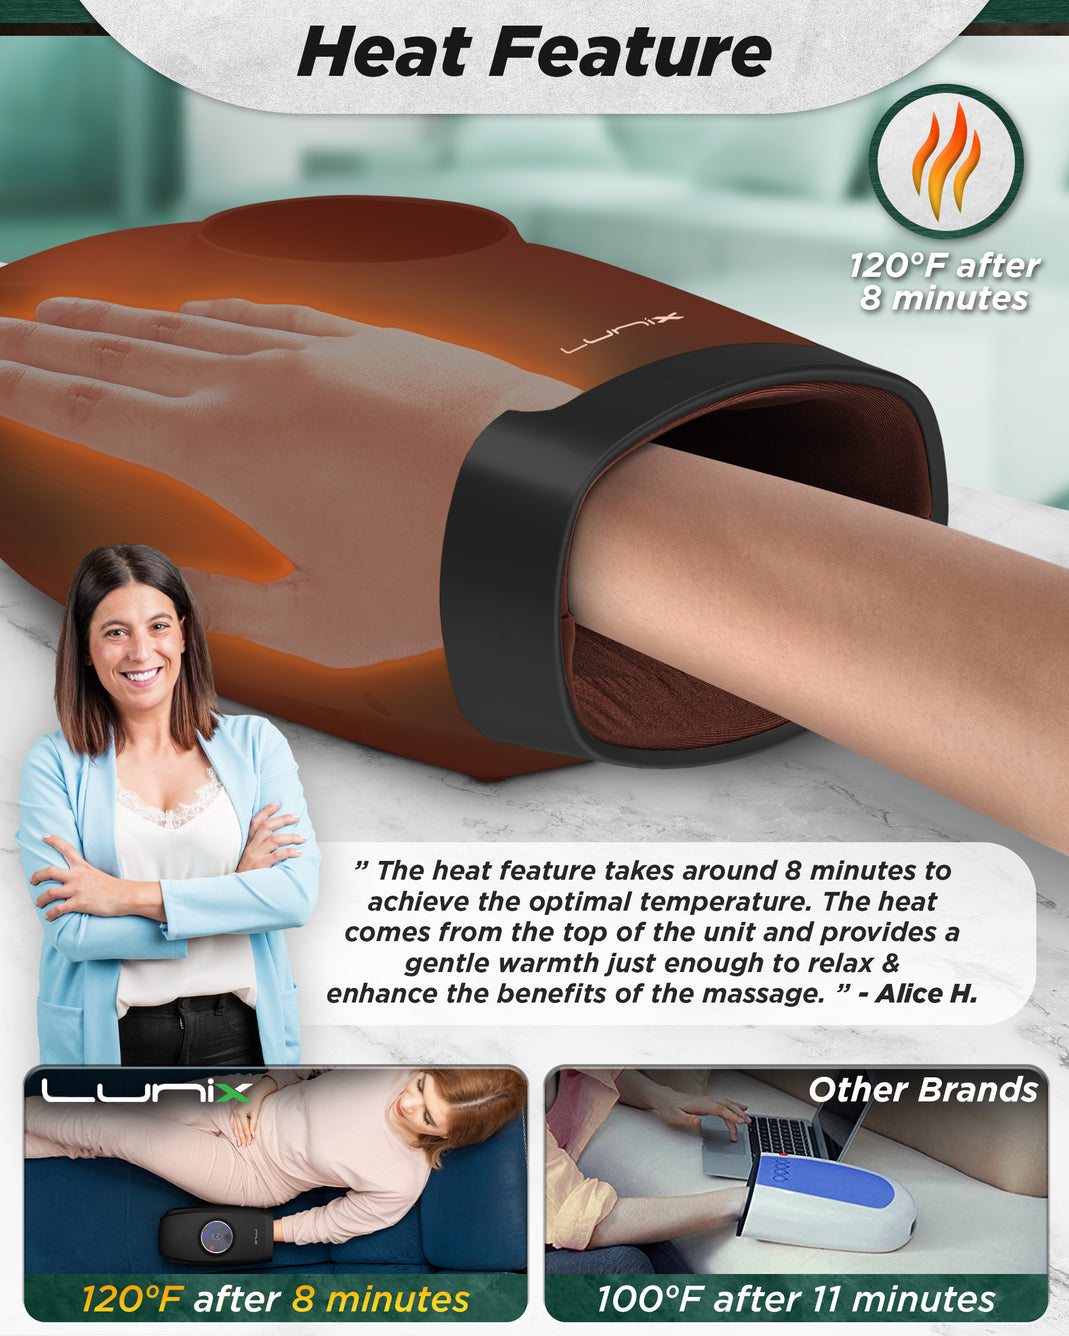 Lunix LX7 Touchscreen Hand Massager Black